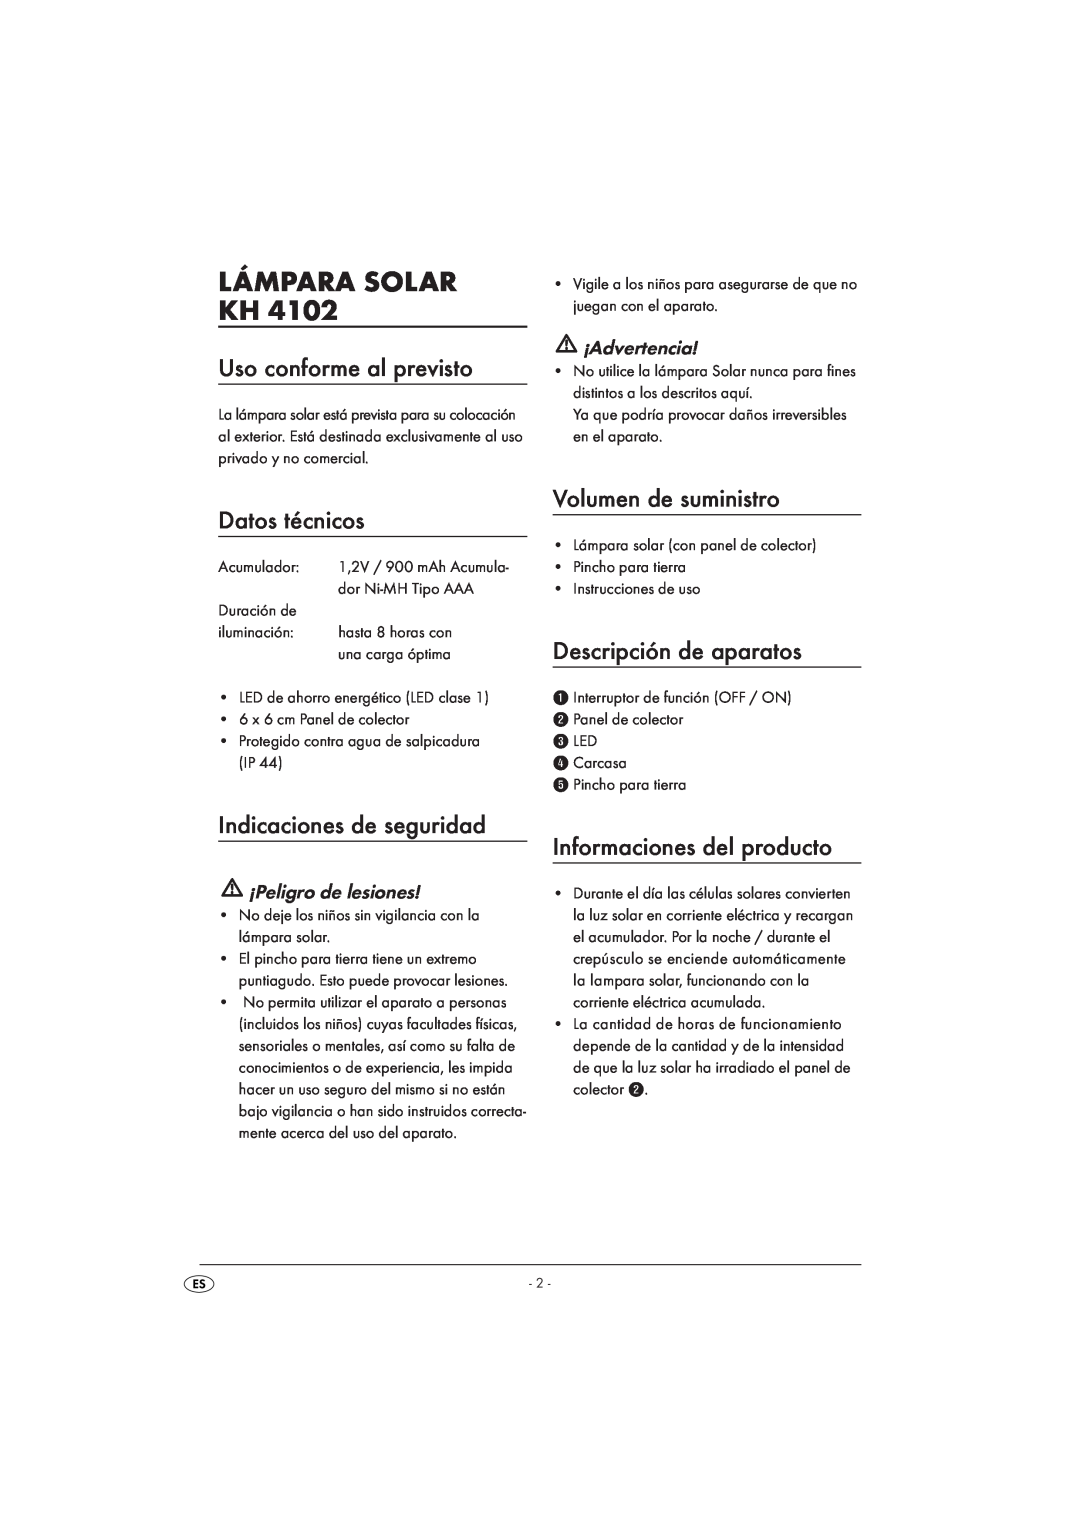 Kompernass KH 4102 manual Lámpara Solar Kh, Uso conforme al previsto, Datos técnicos, Volumen de suministro, ¡Advertencia 